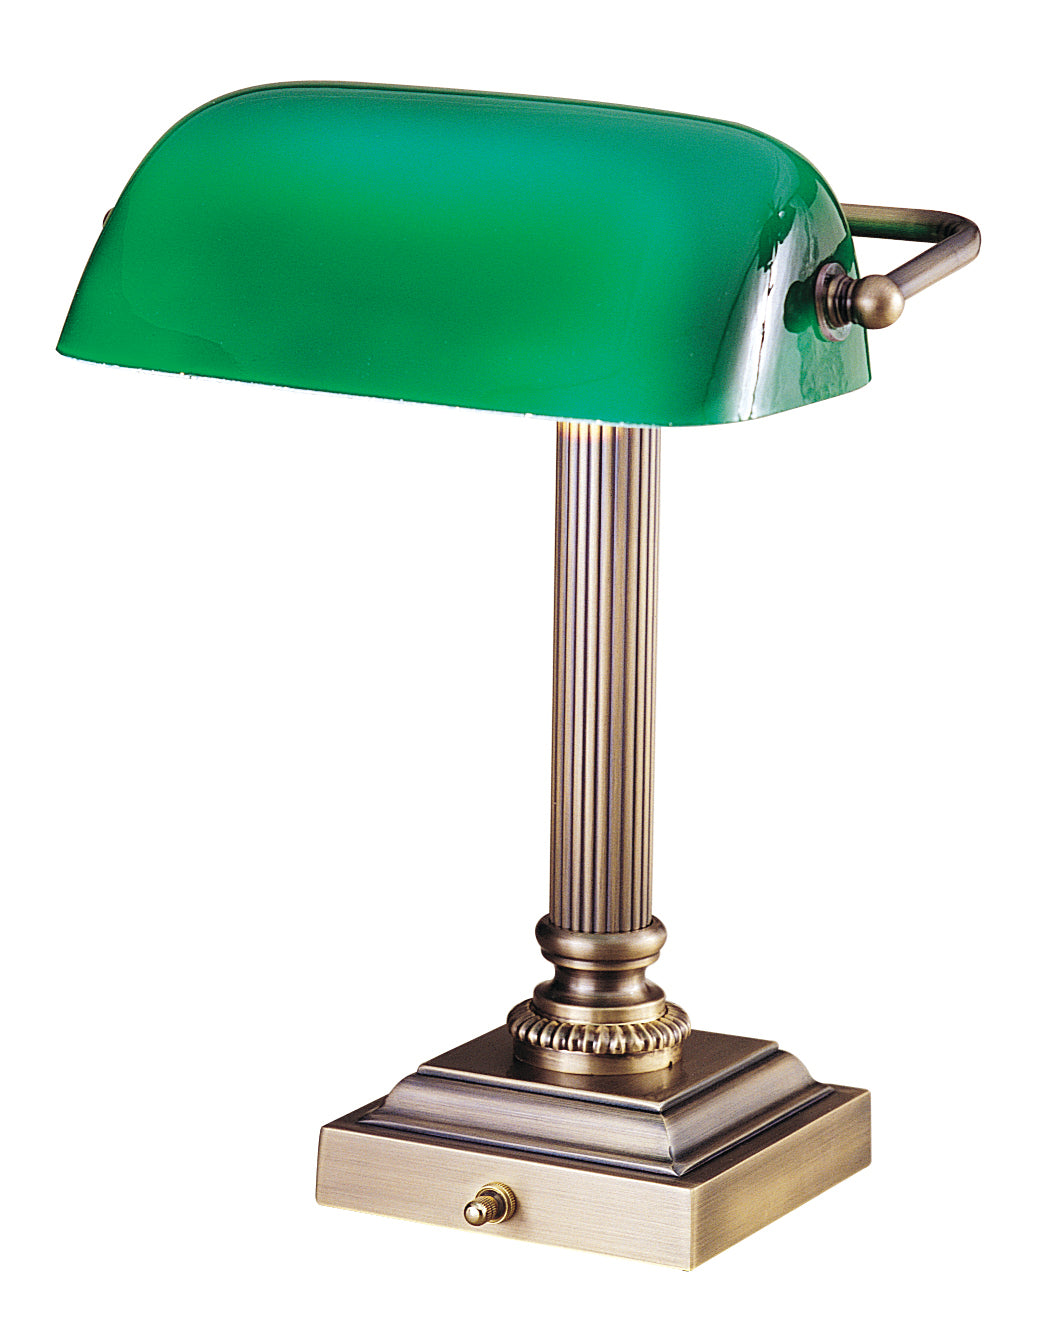 House of Troy Shelburne Antique Brass Green Glass Lamp DSK428-G71